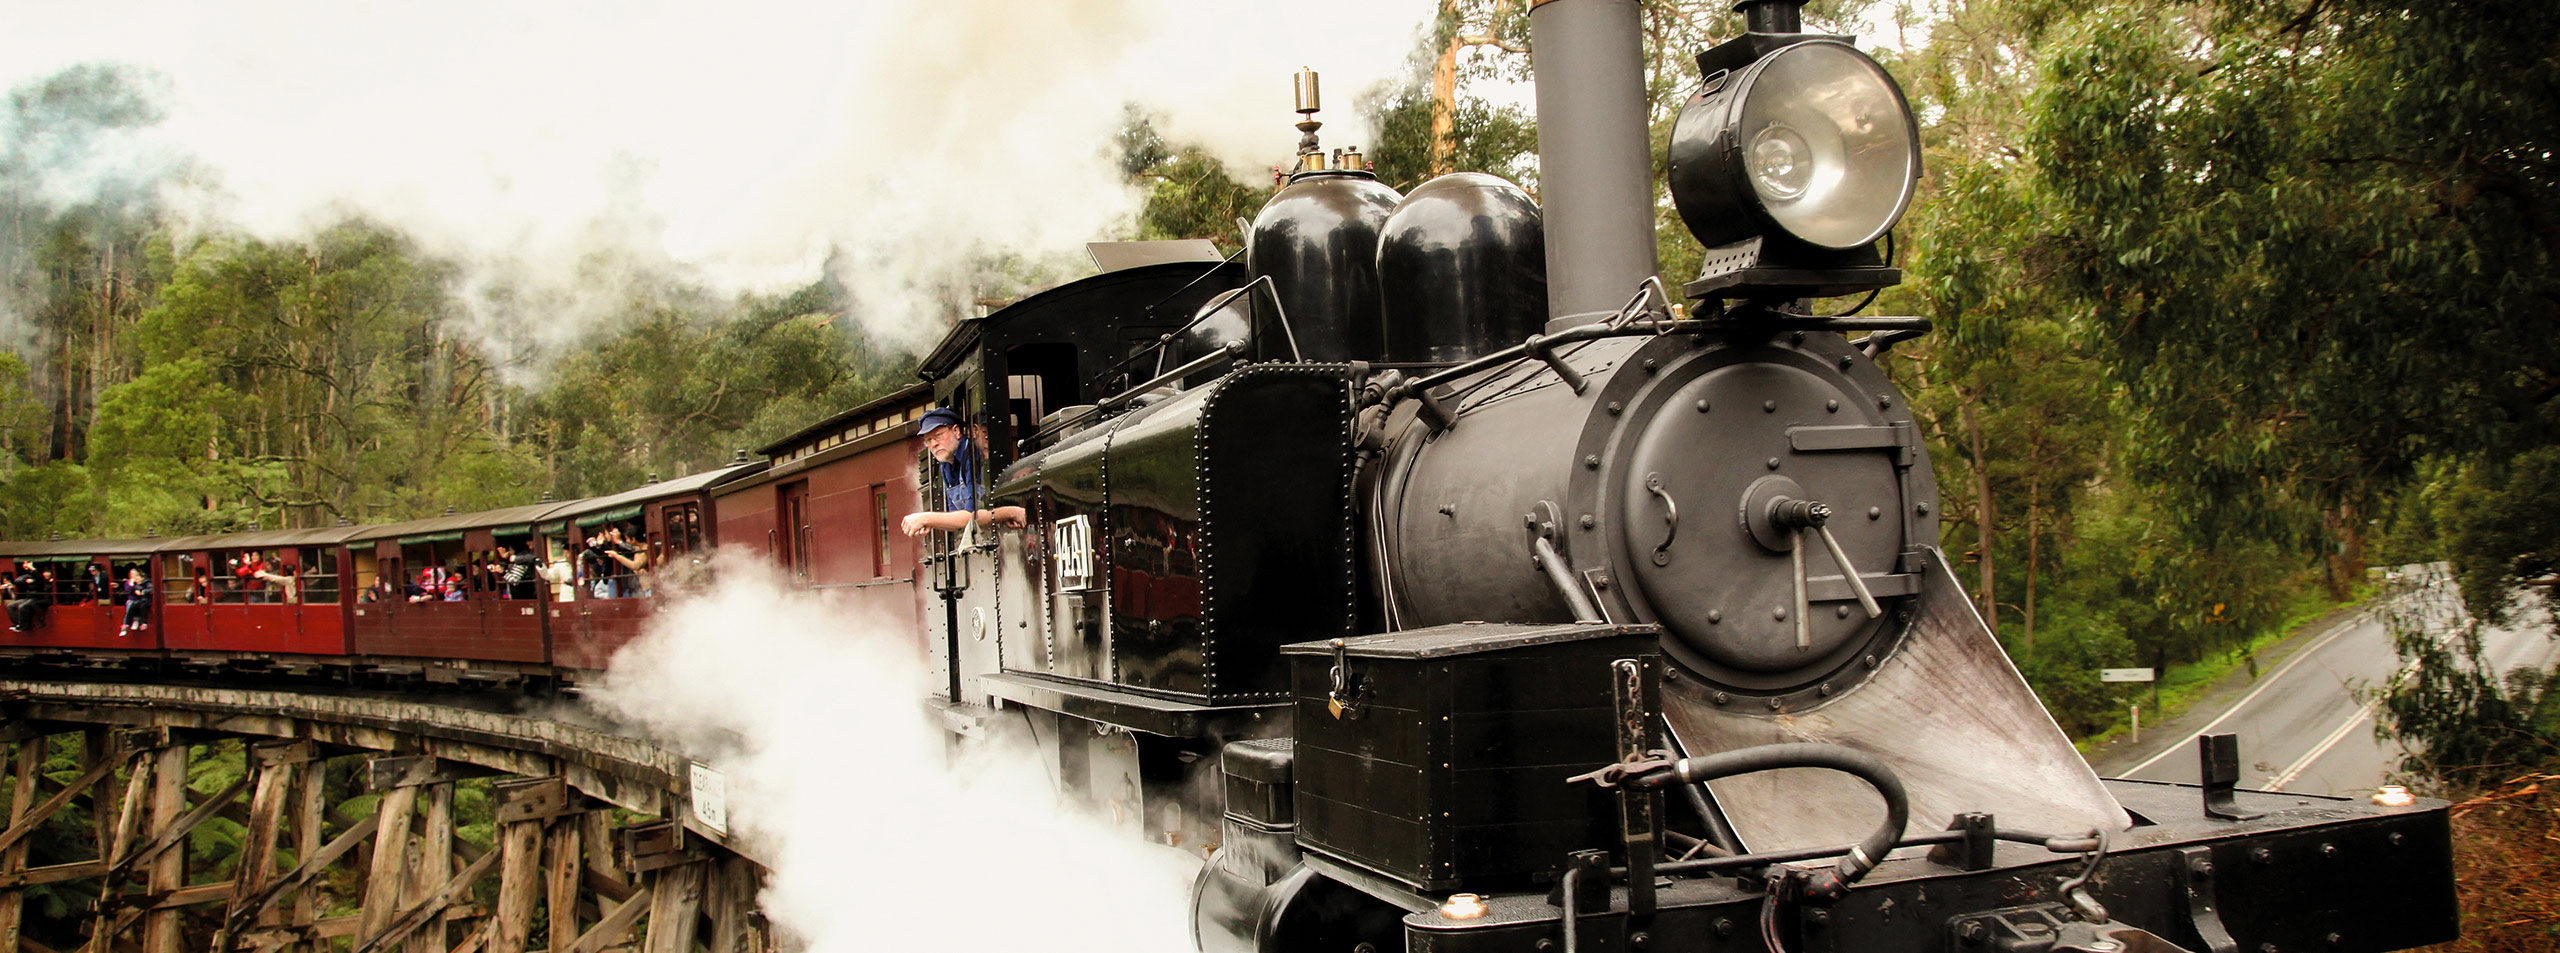 Puffing Billy Steam Train